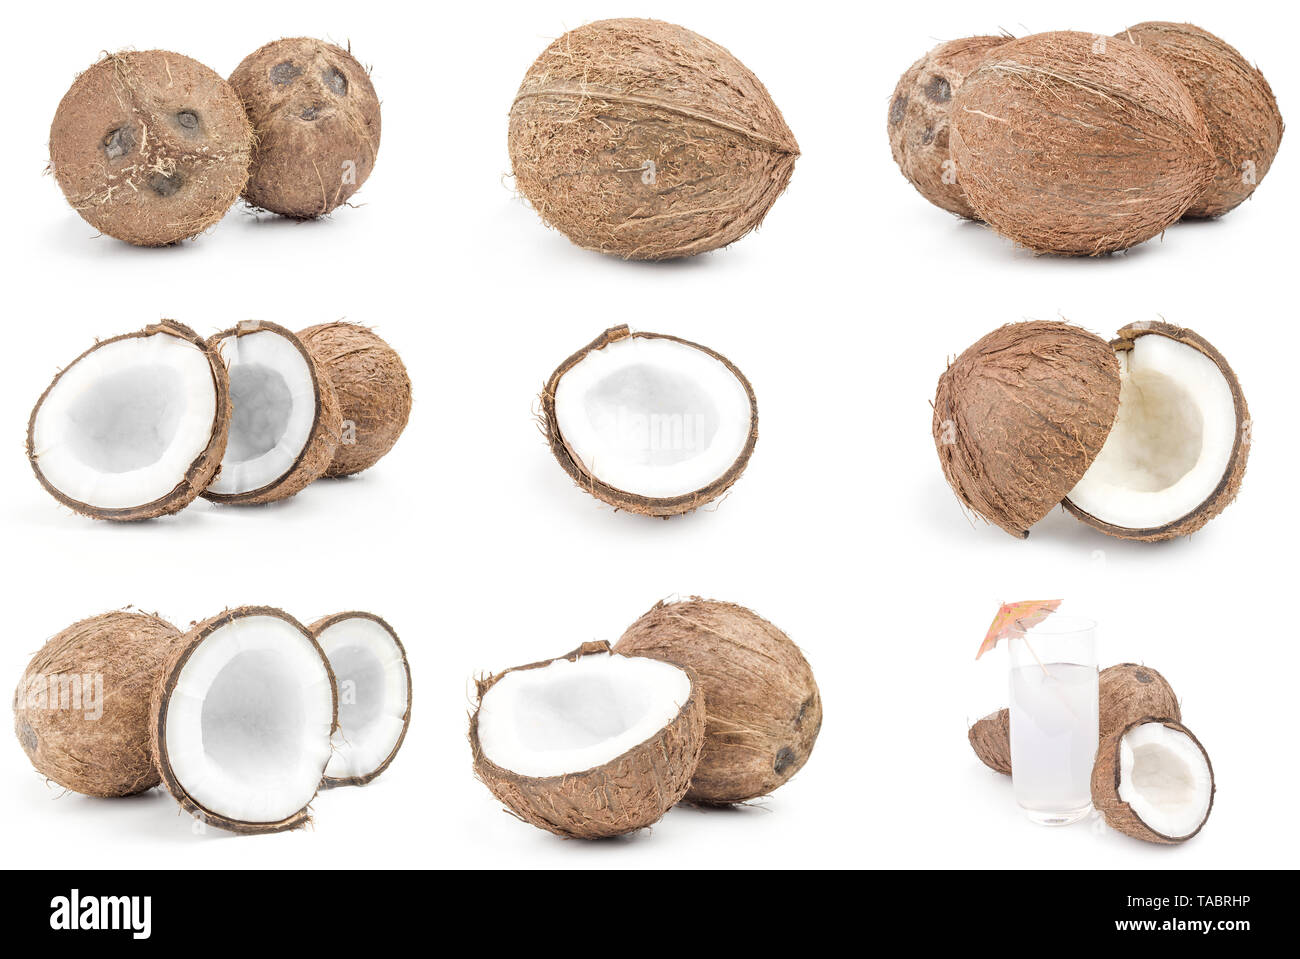 Raccolta delle noci di cocco su uno sfondo bianco intaglio Foto Stock